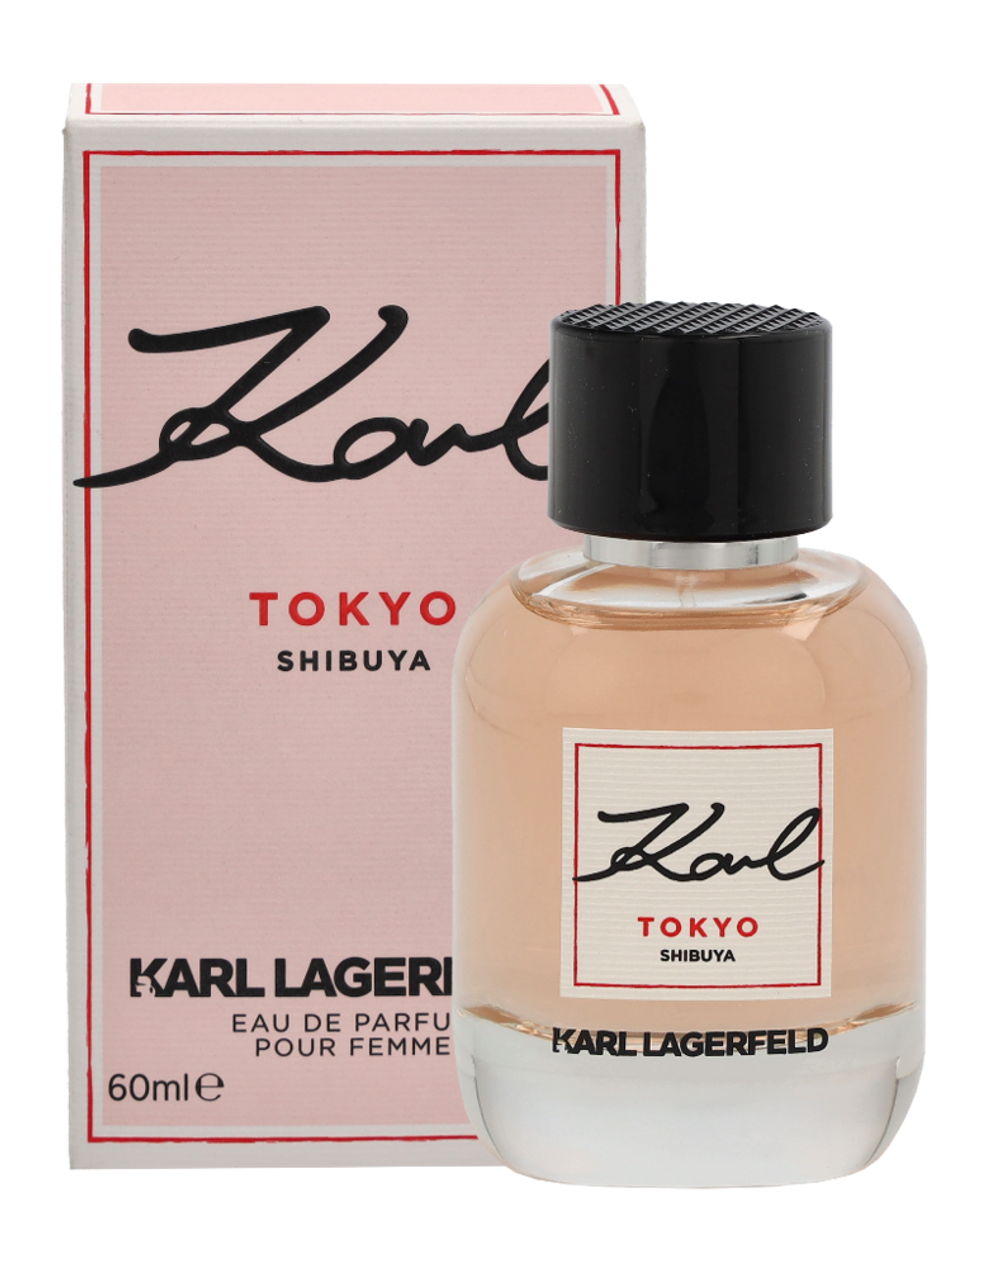 Tilbud på Karl Lagerfeld Tokyo Shibuya Pour Femme Edp Spray fra Fleggaard til 139 kr.